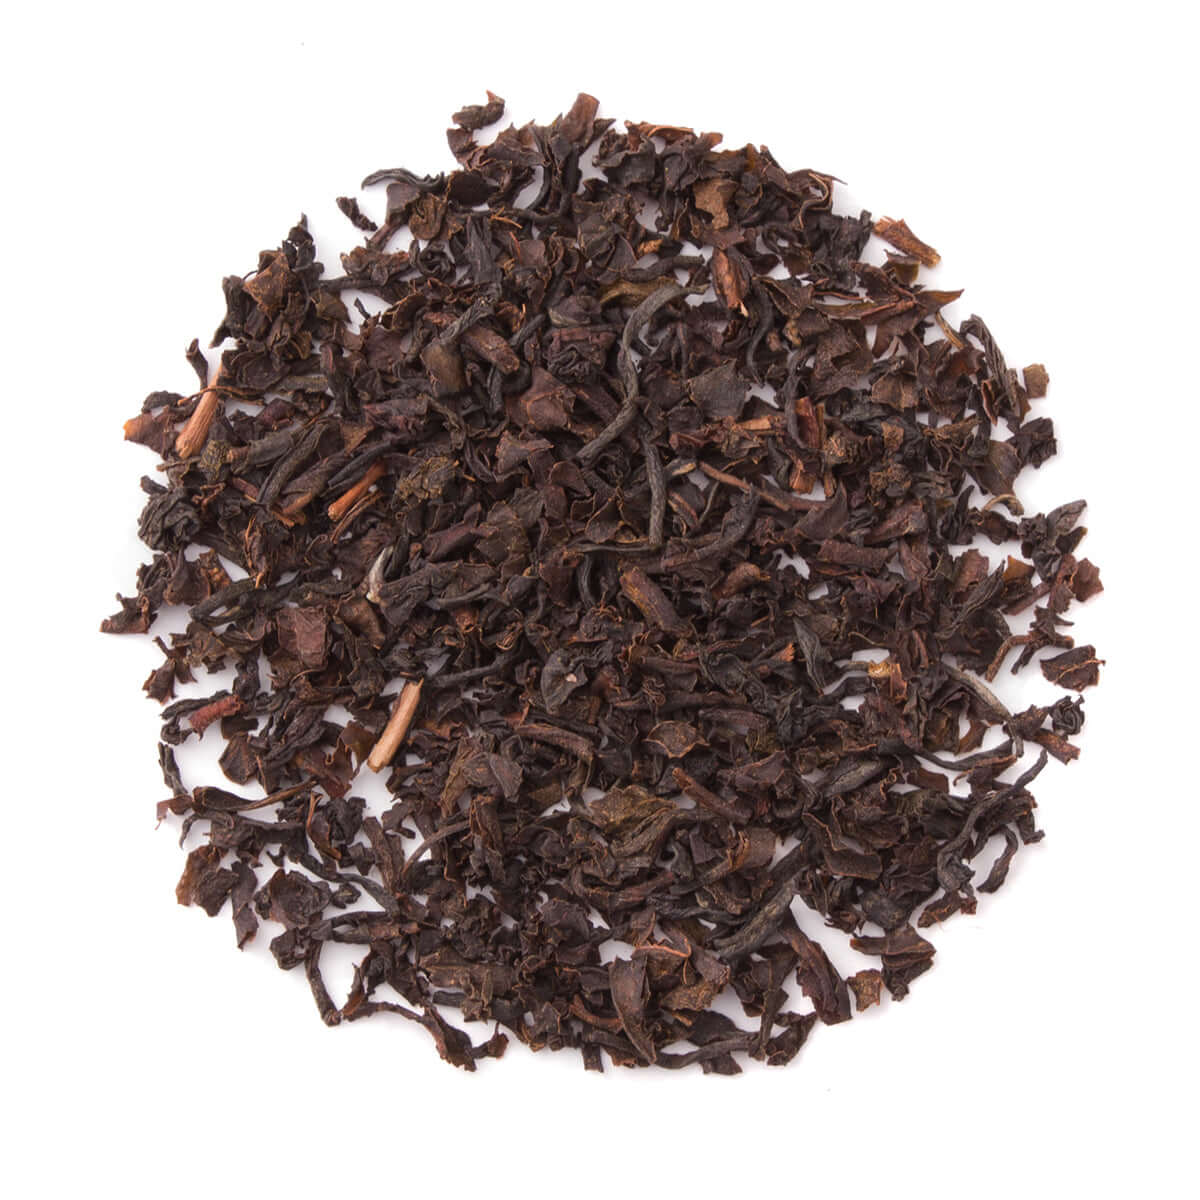 Organic English Breakfast - Loose Leaf Black Tea - Classic Morning Tea | Heavenly Tea Leaves